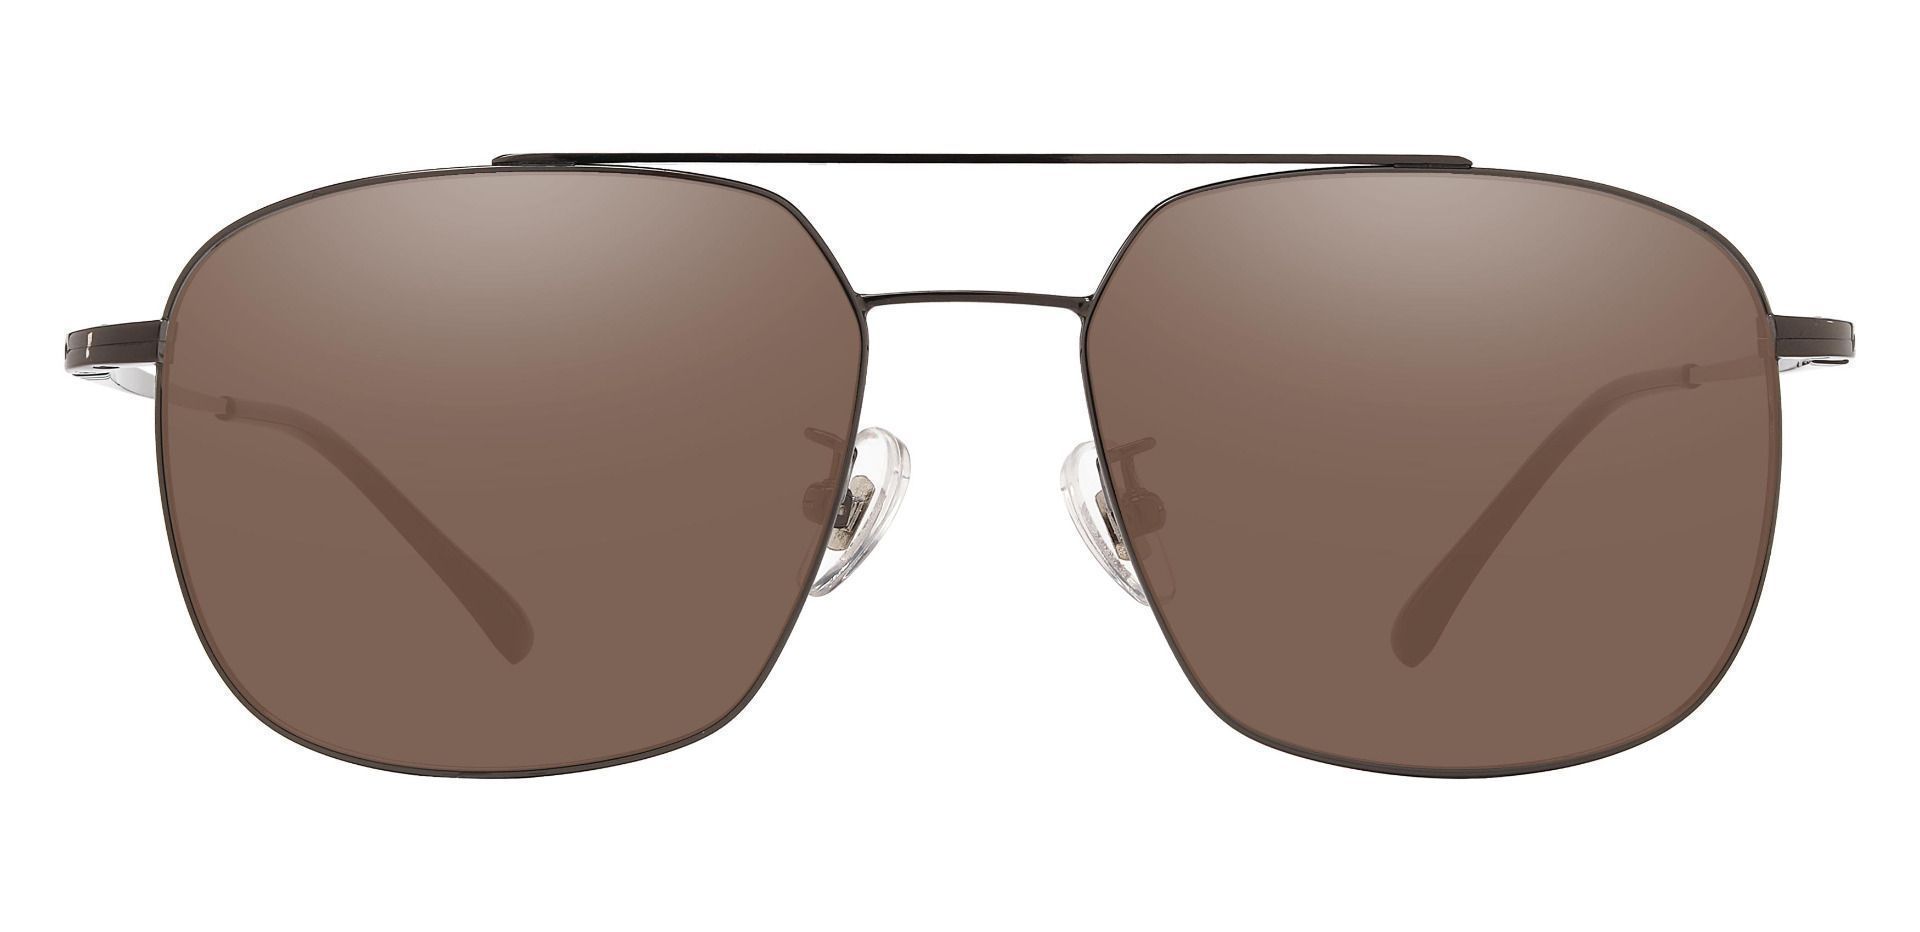 Trevor Aviator Reading Sunglasses - Gray Frame With Brown Lenses